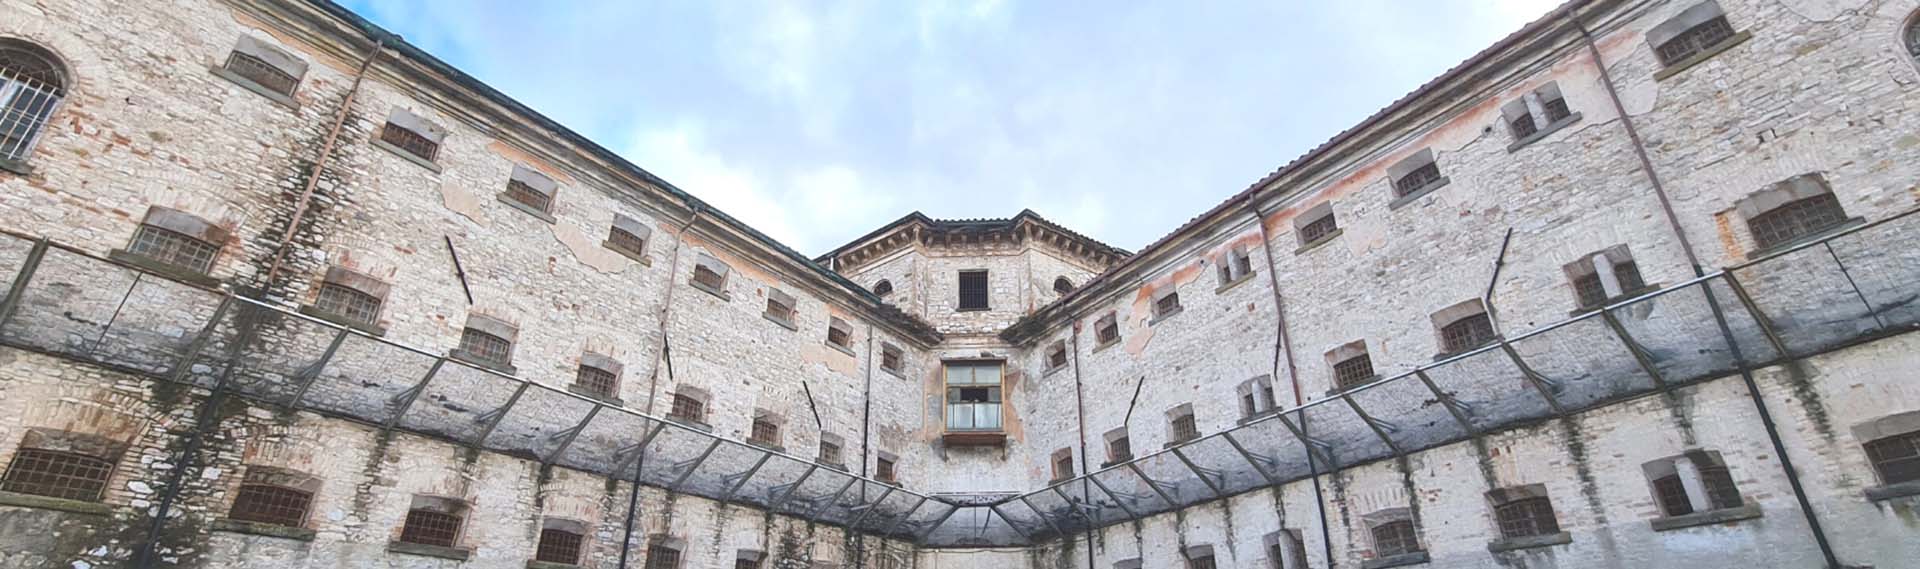 Un'immagine a grandangolo dell'ex carcere di Perugia